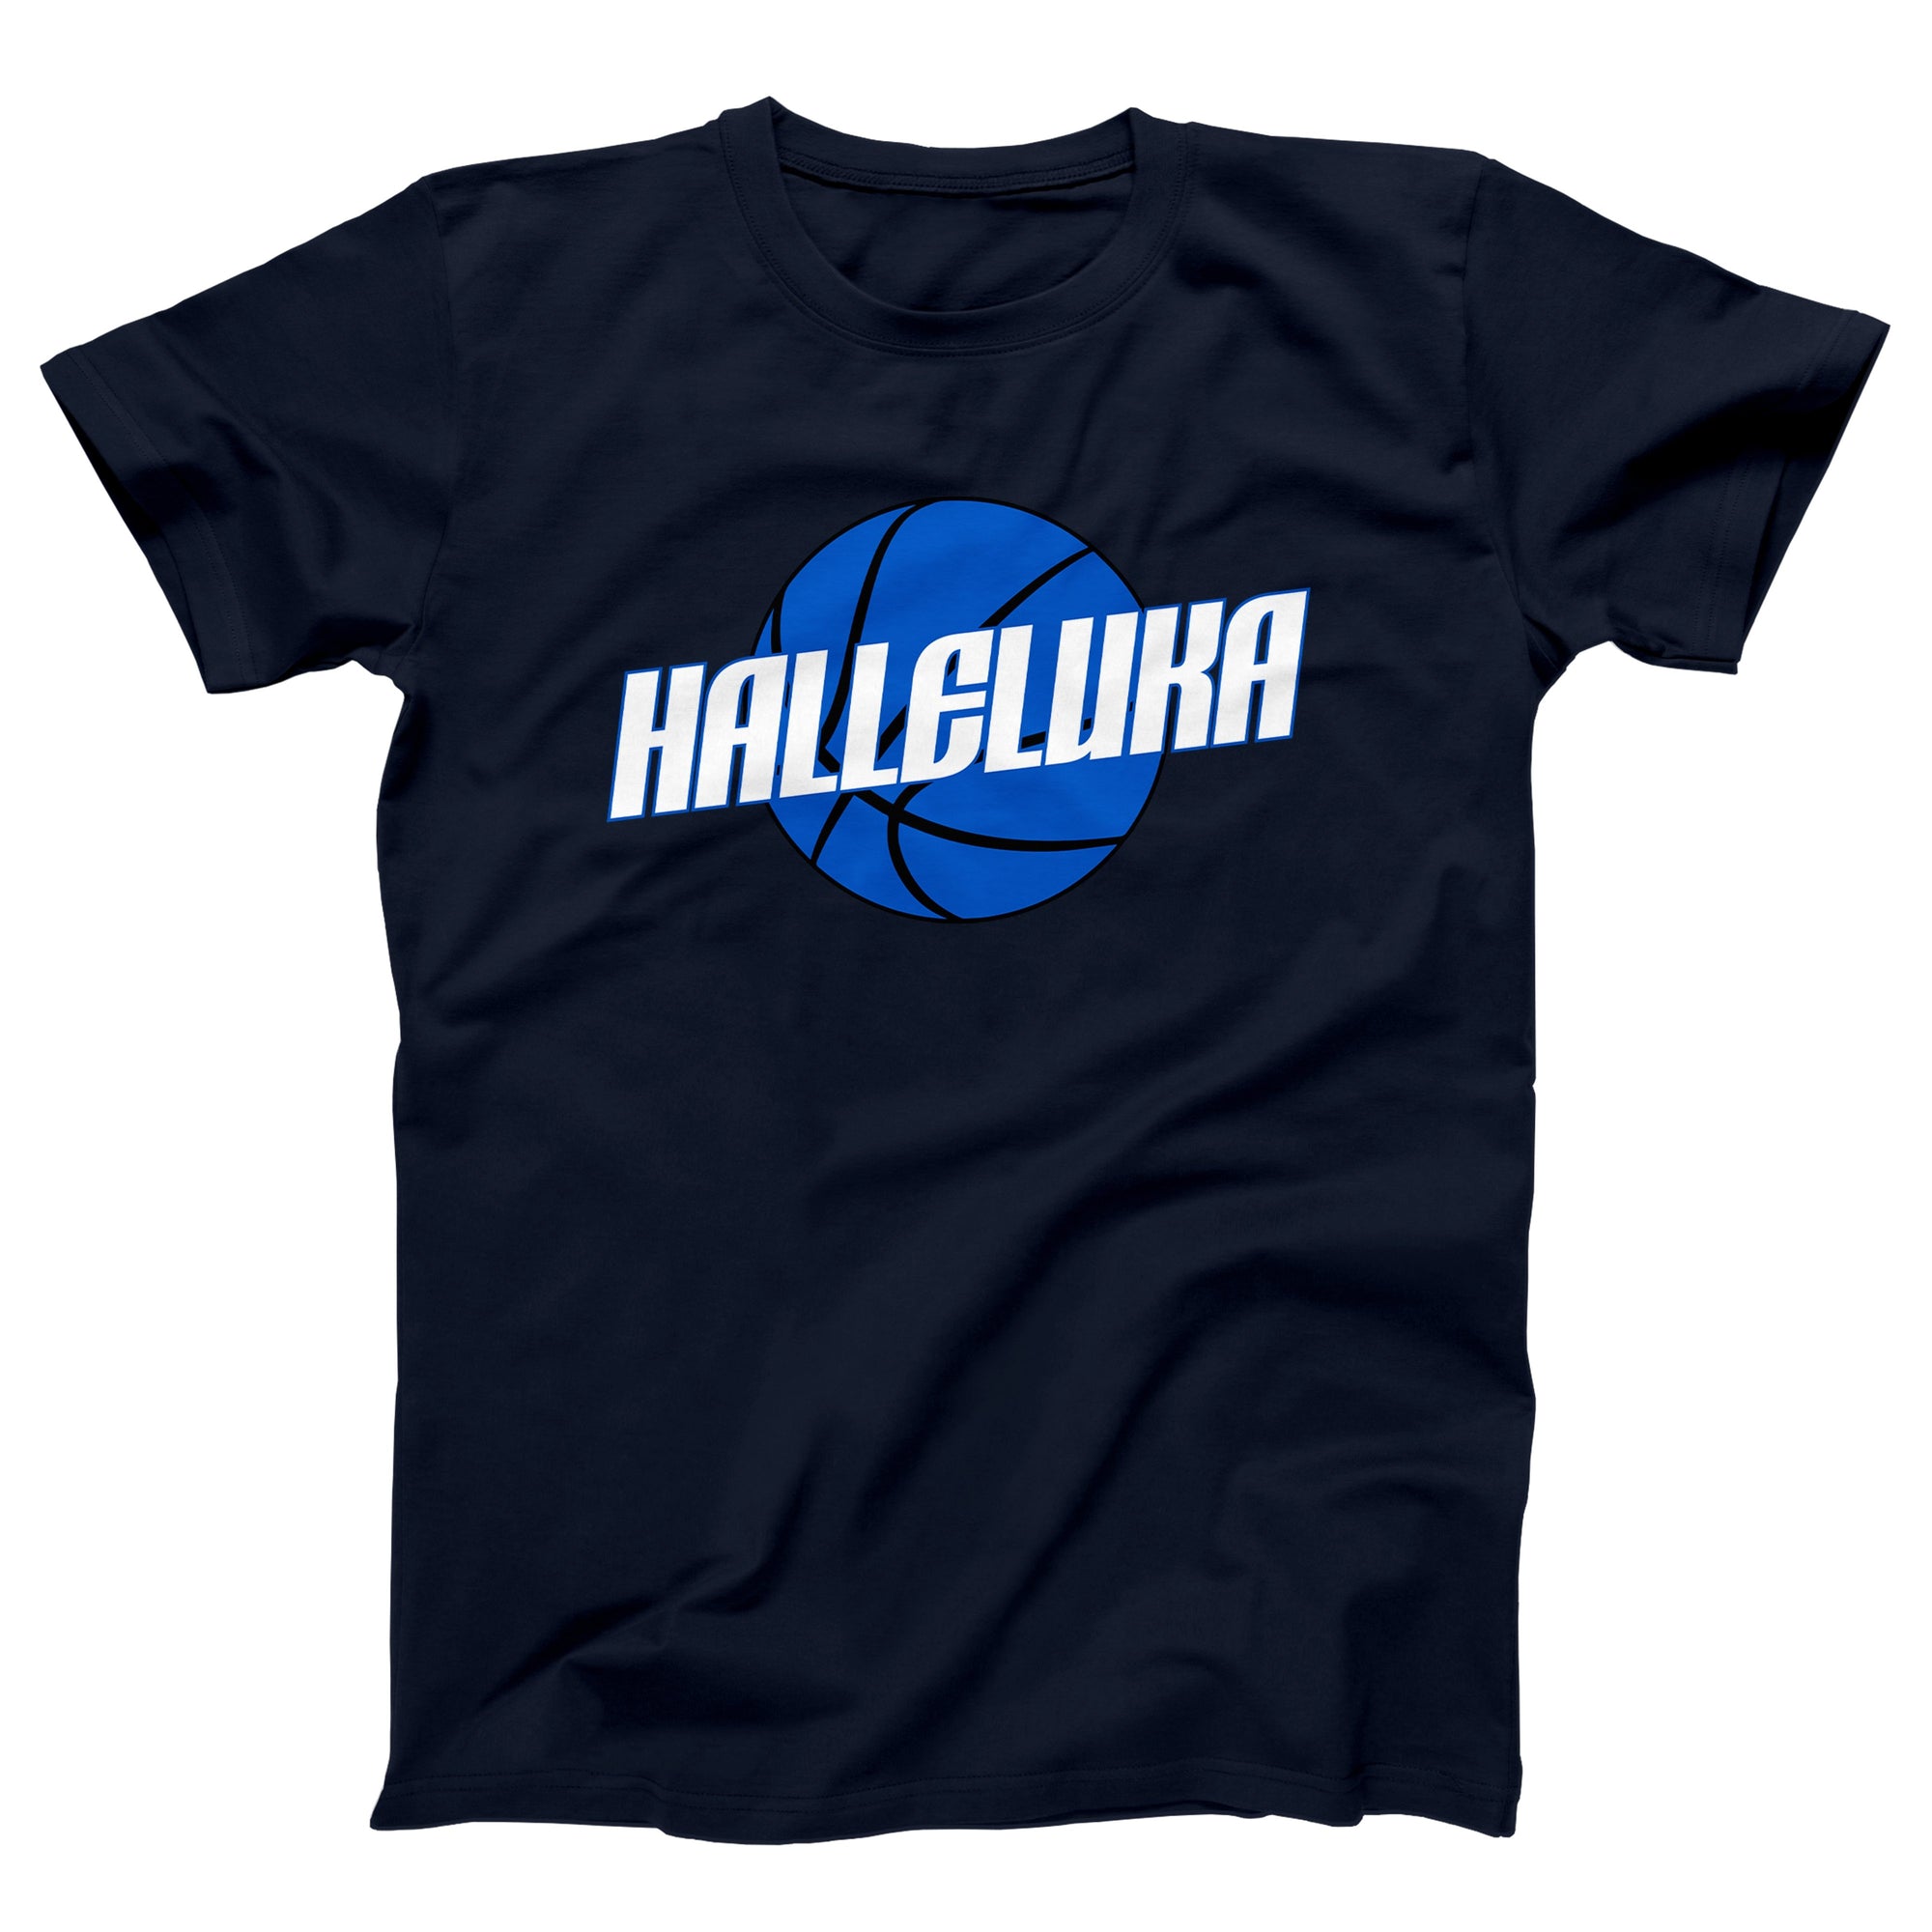 Halleluka Adult Unisex T-Shirt